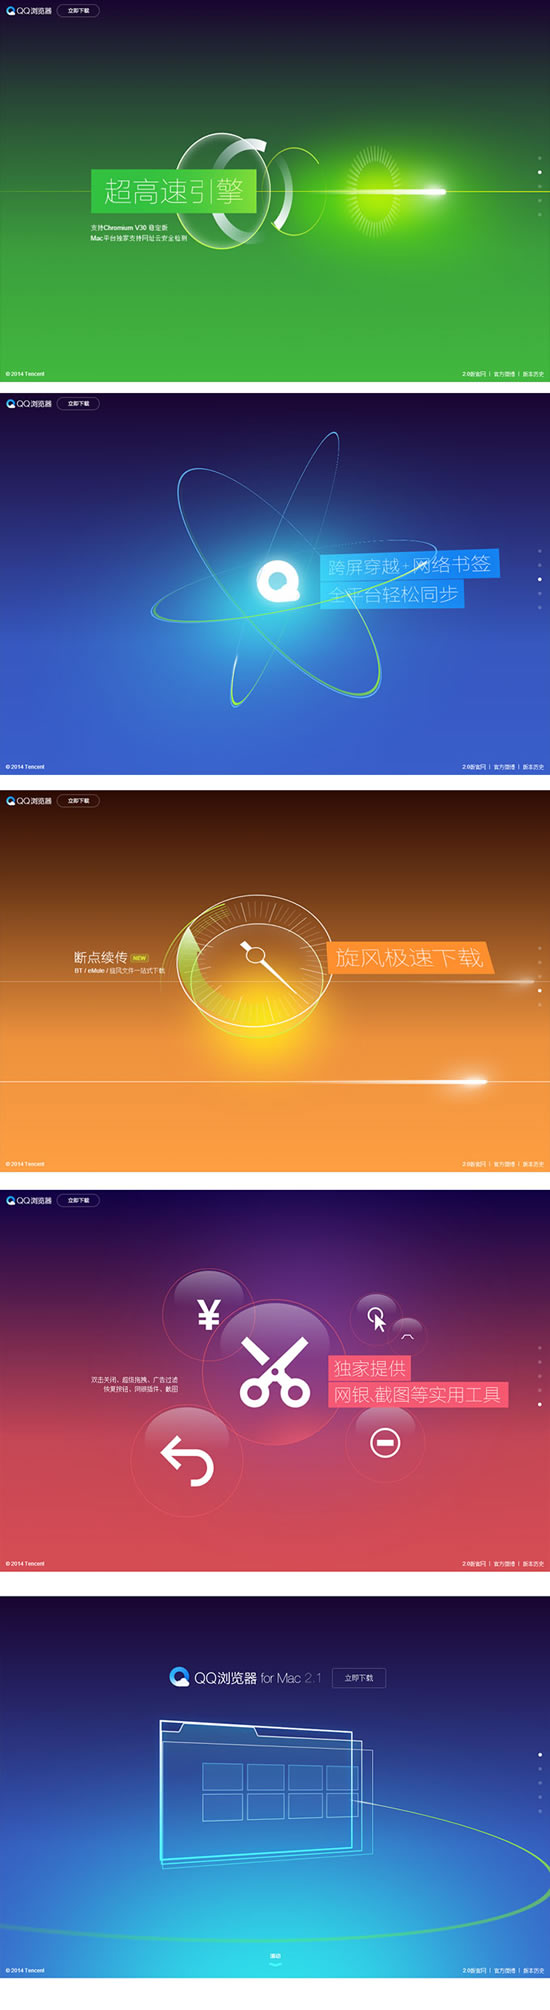 Tencent browser latar belakang psd template